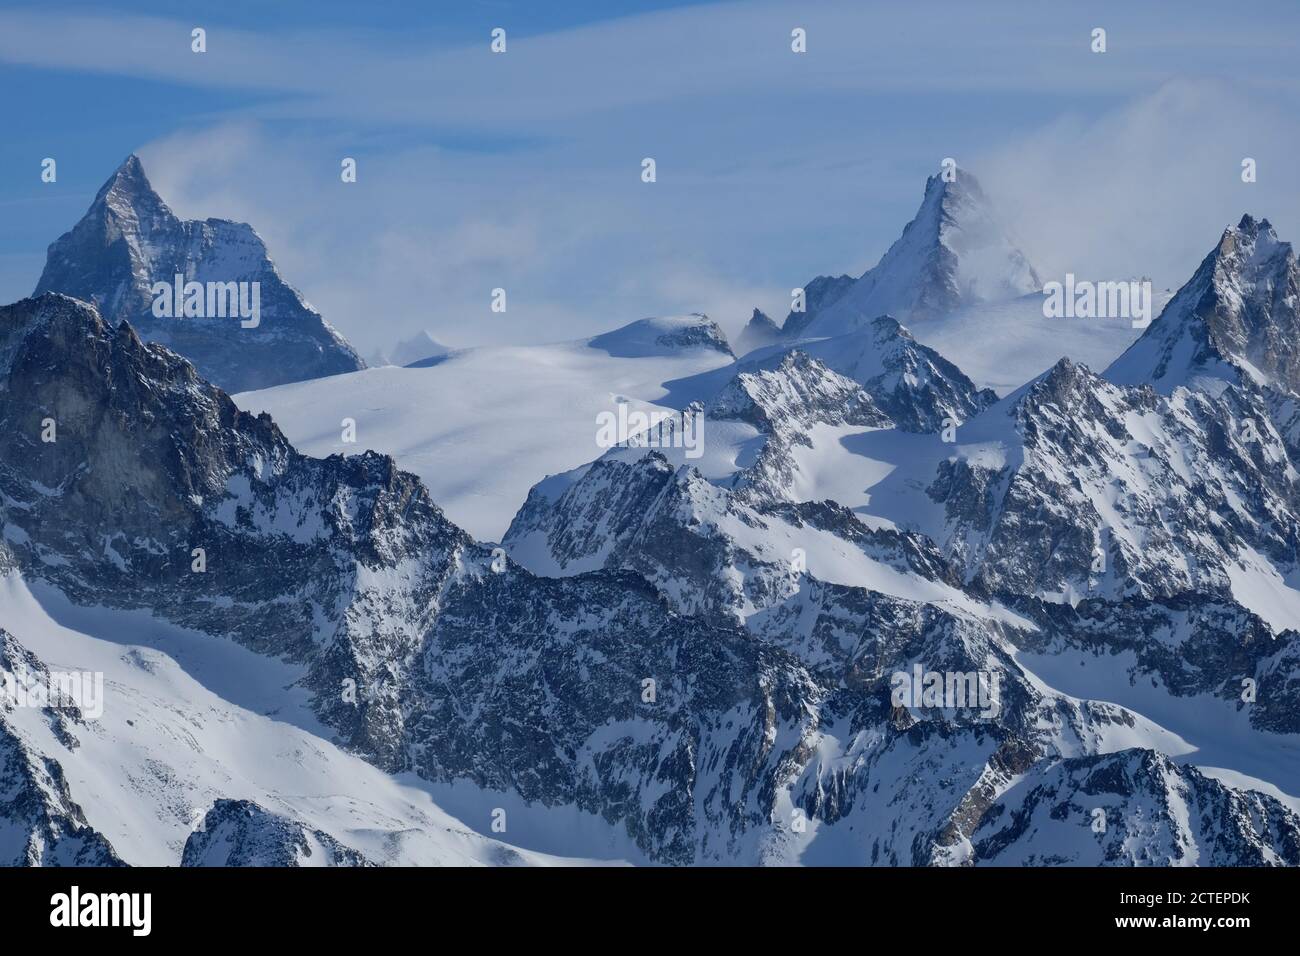 Neige couverte 'arrière' de Matterhorn et Dent d'Herens vu au printemps de la région d'Arolla, alpes suisses Banque D'Images